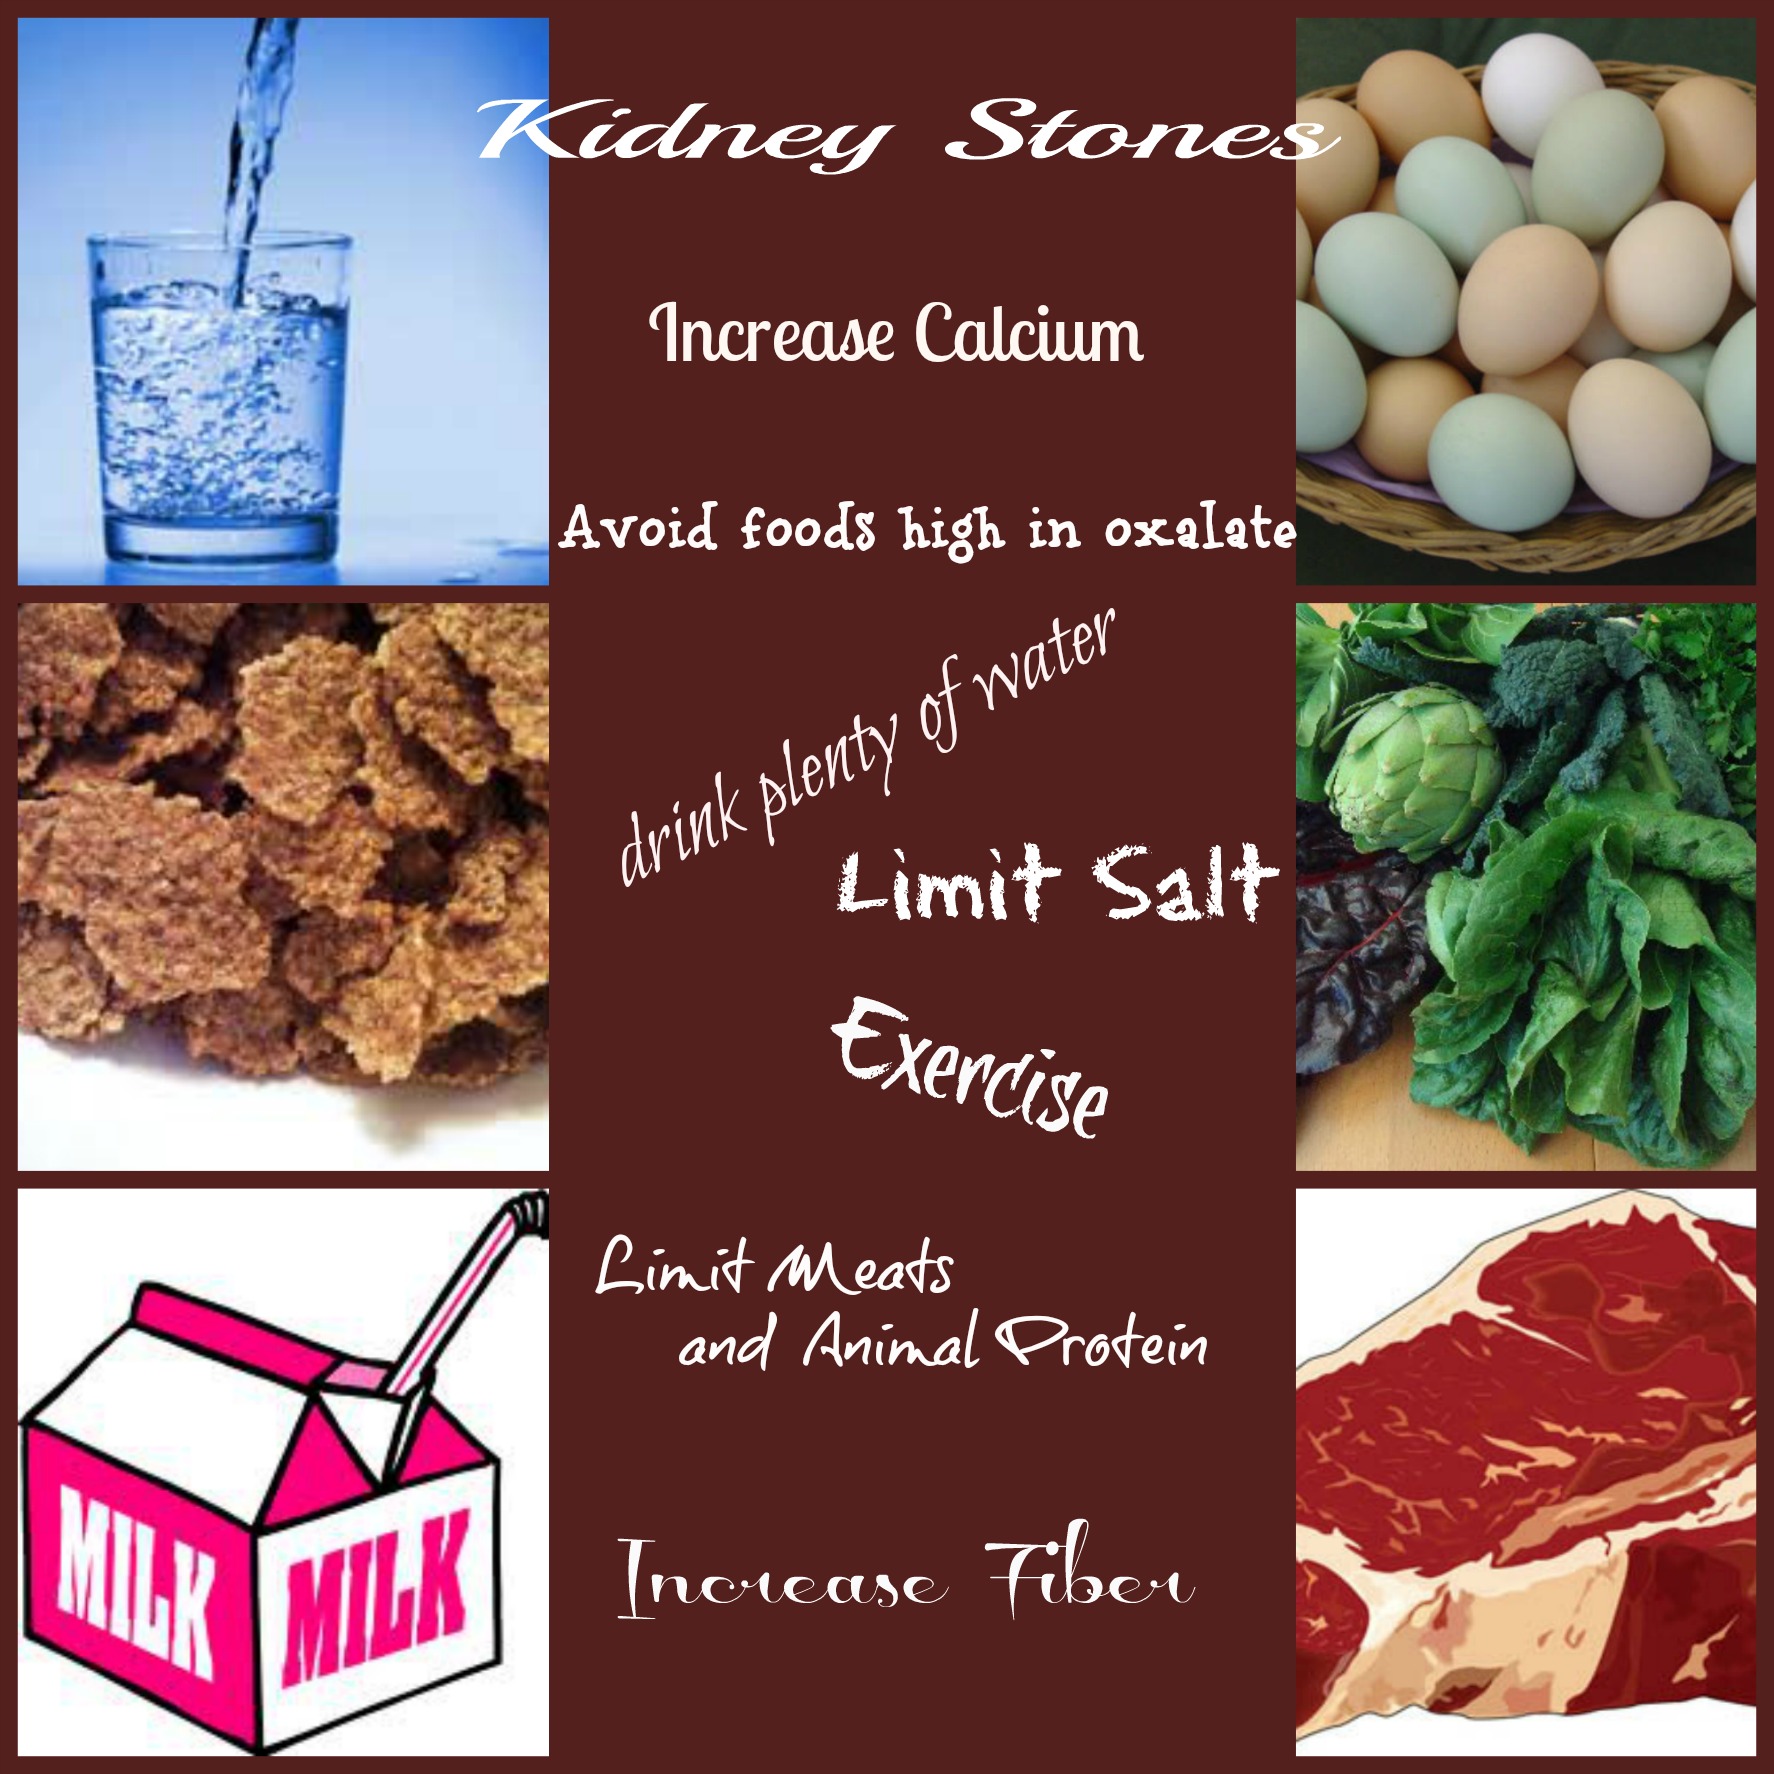 kidney stone